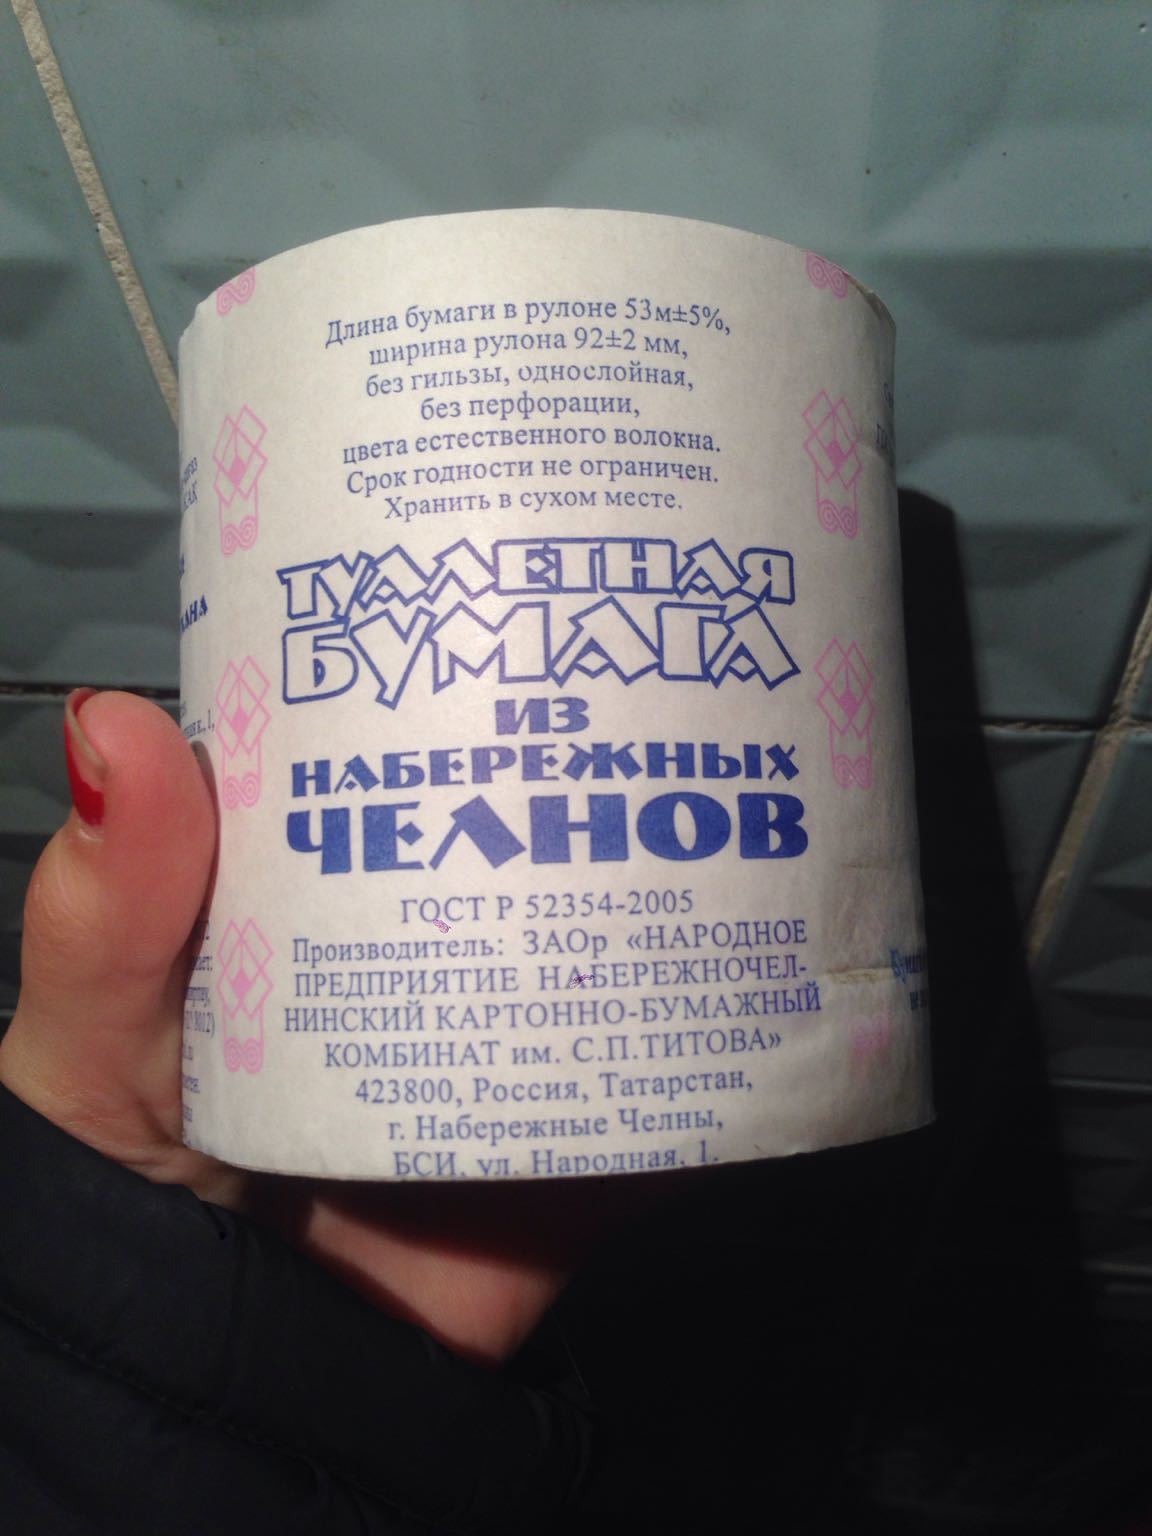 Toilet paper - Longpost, Naberezhnye Chelny, Toilet paper, My